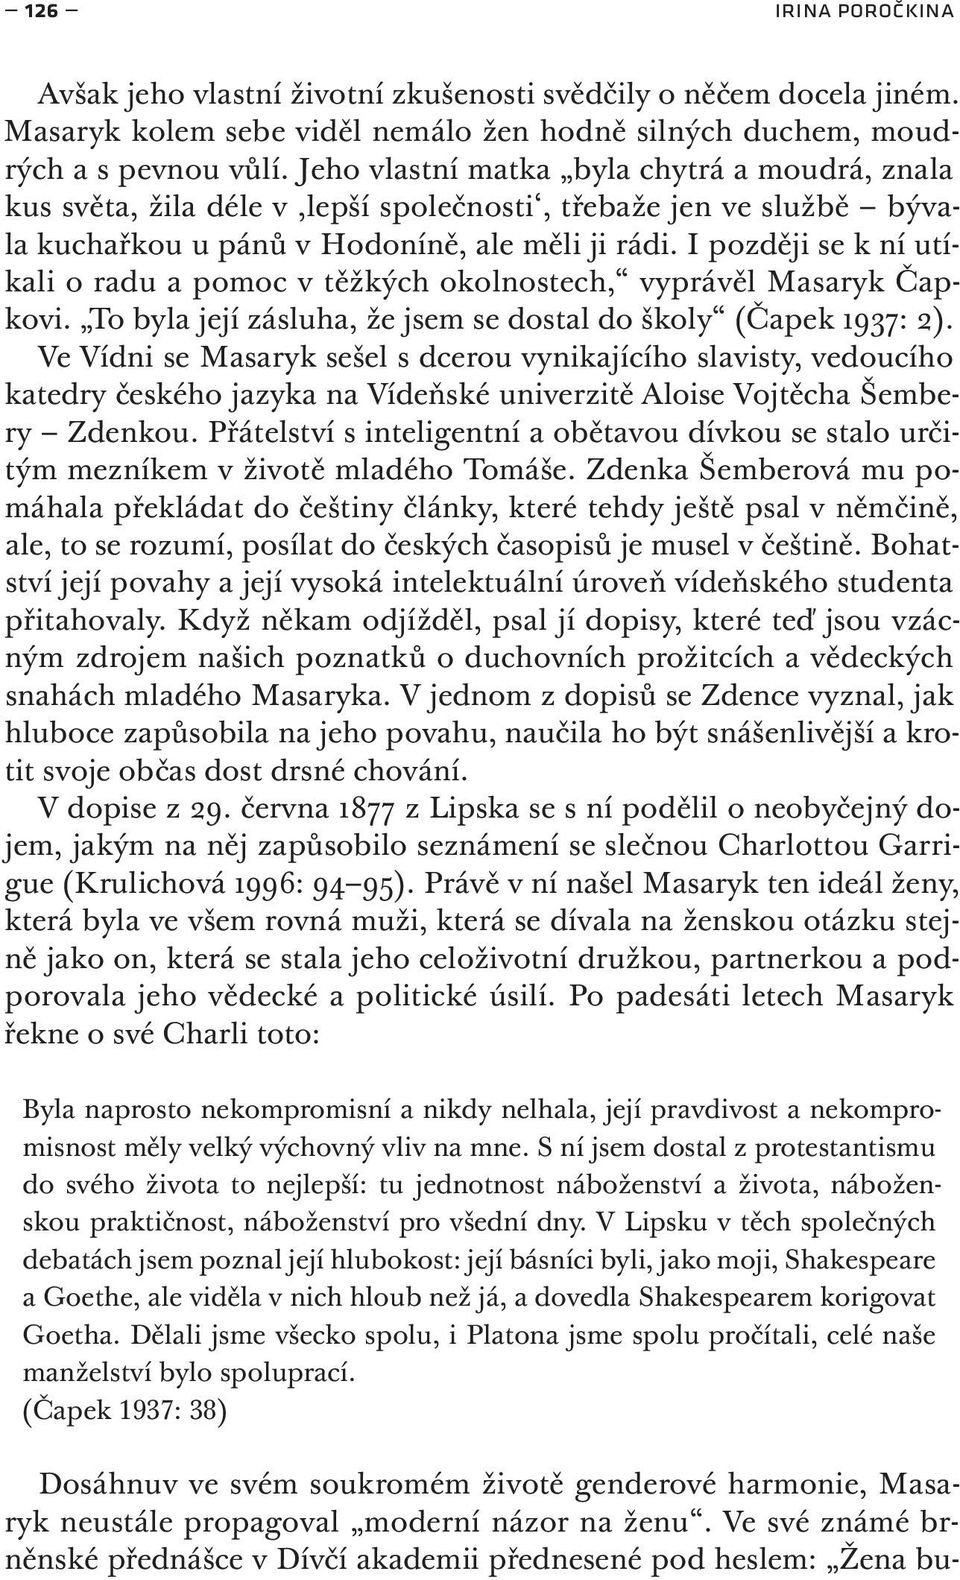 T. G. Masaryk v kontextu genderového myšlení - PDF Free Download